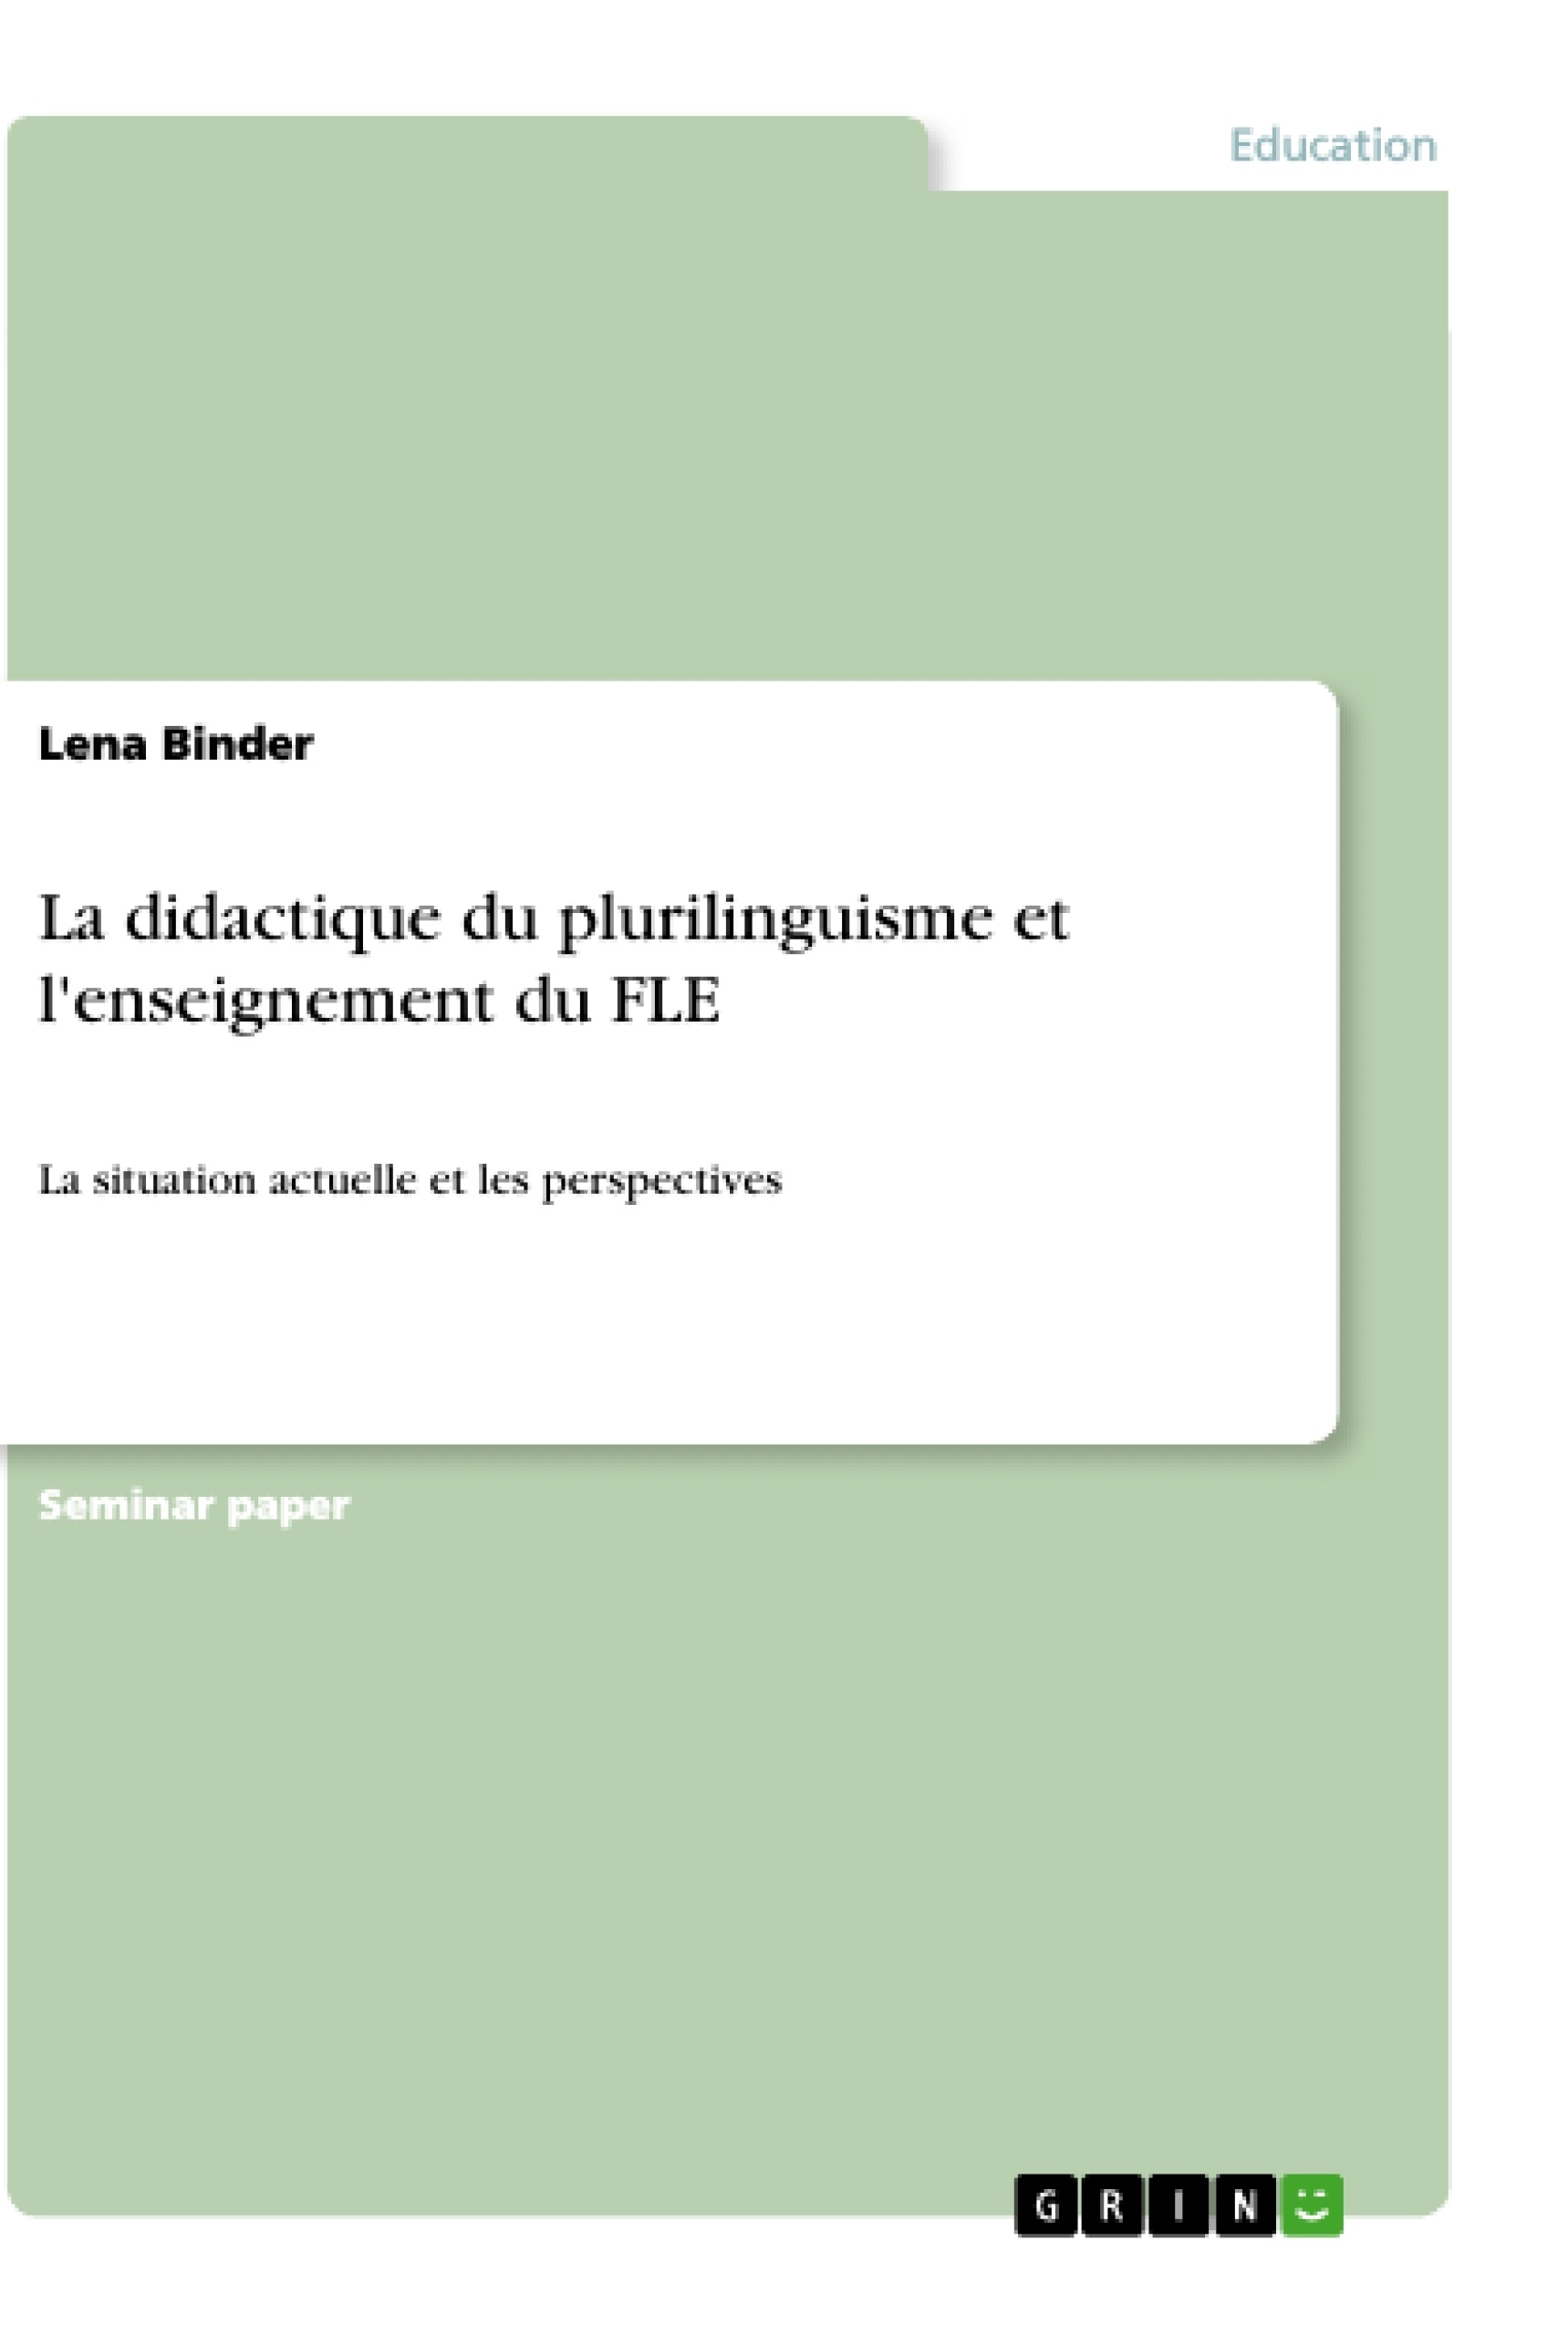 Title: La didactique du plurilinguisme et l'enseignement du FLE